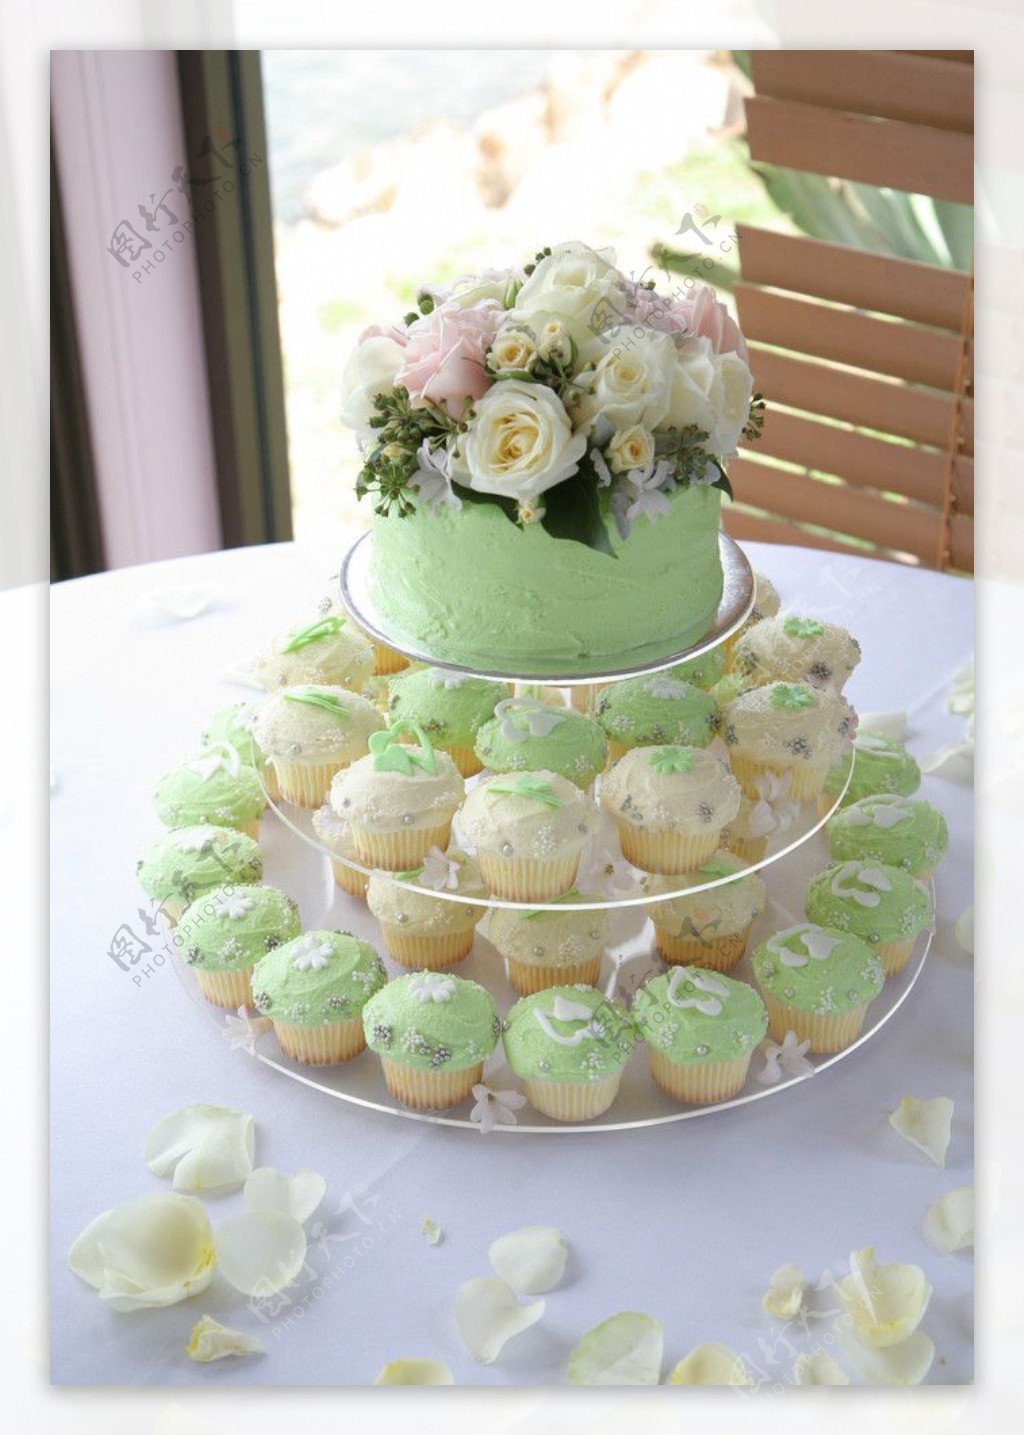 婚礼蛋糕玛芬西饼麦芬结婚蛋糕浅绿图片